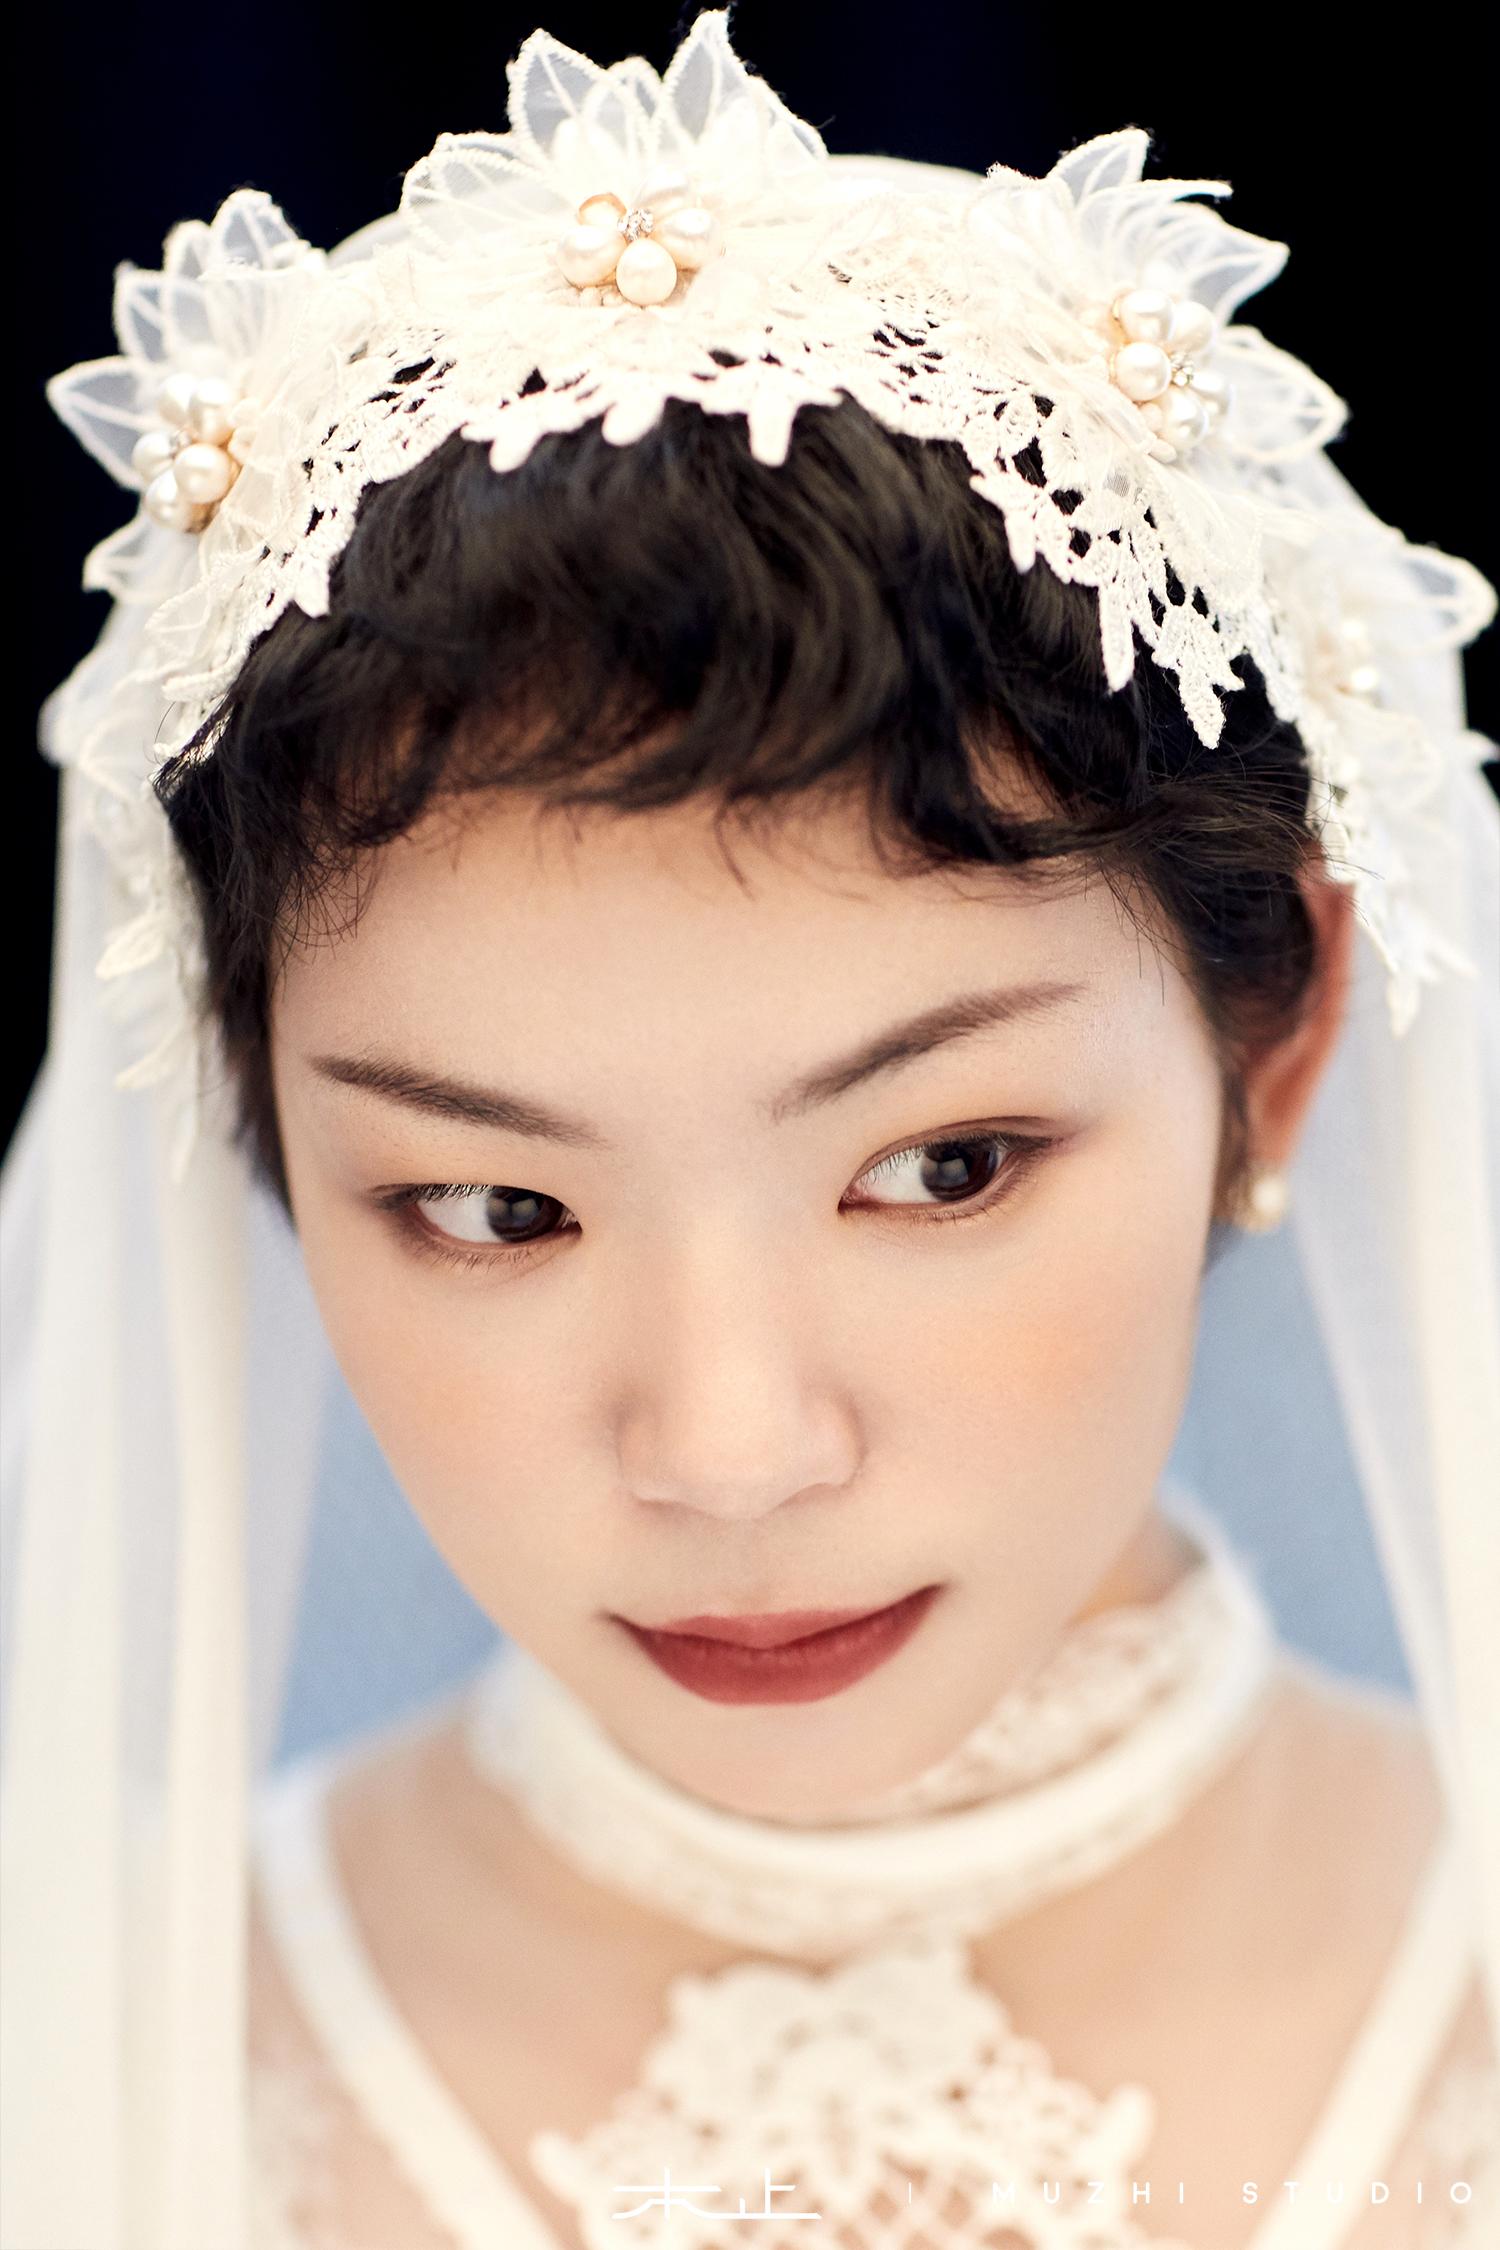 米兰新娘婚纱摄影【套系 报价 案例】-北京婚纱摄影-百合婚礼